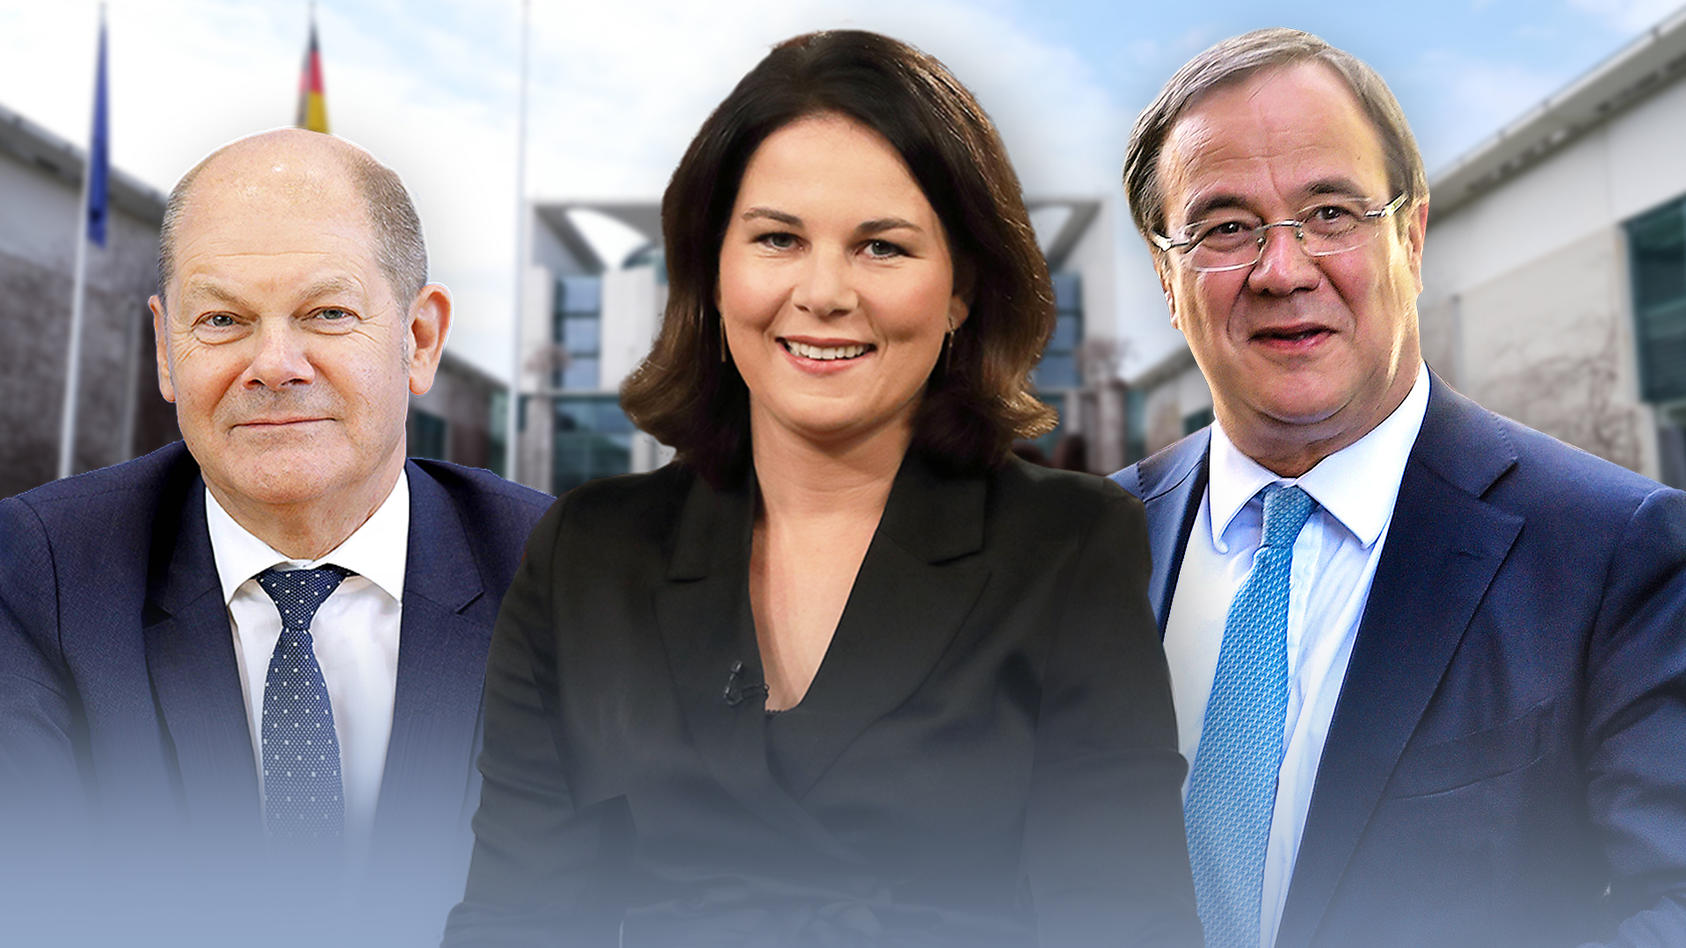 Wollen Kanzler werden: Olaf Scholz (SPD), Annalena Baerbock (Grüne), Armin Laschet (CDU)